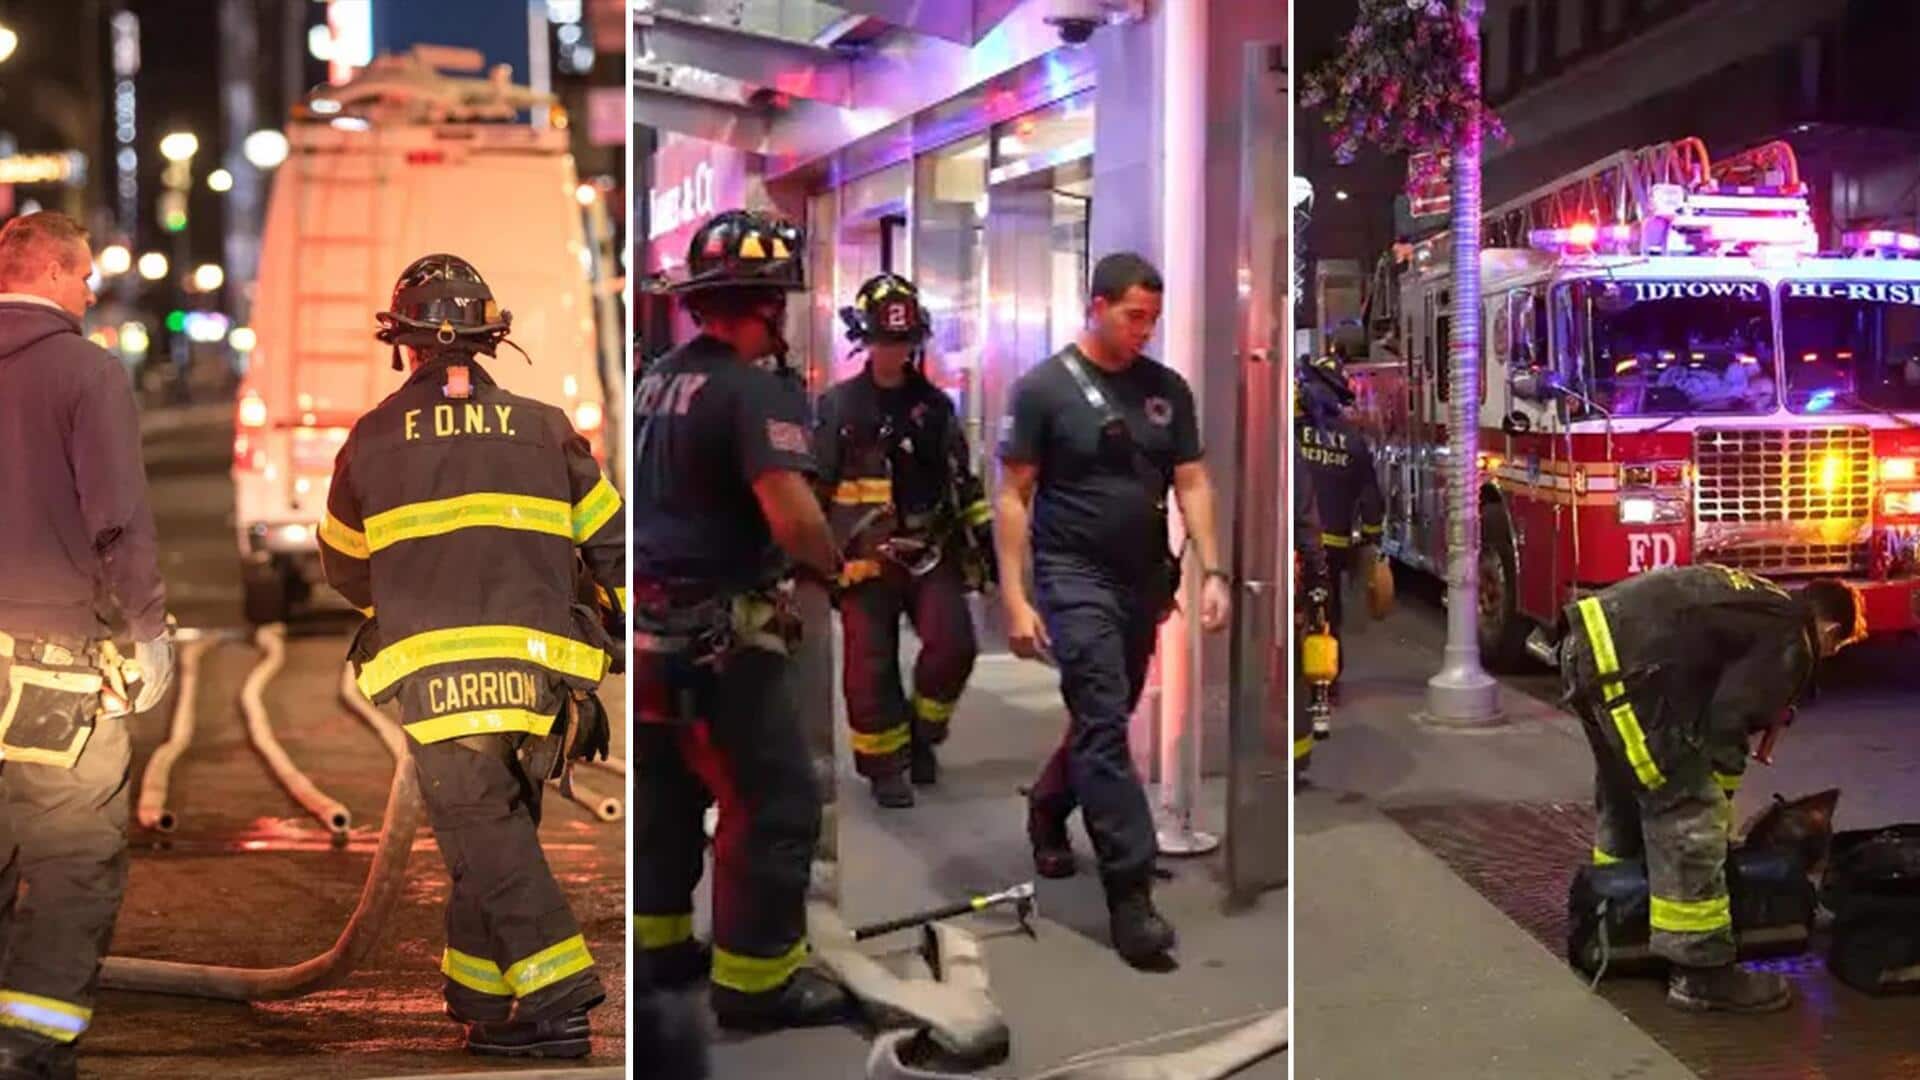 न्यूयॉर्क: 10 घंटे तक तिजोरी में बंद रहा व्यक्ति, बाहर नहीं निकाल पाए बचावकर्मी